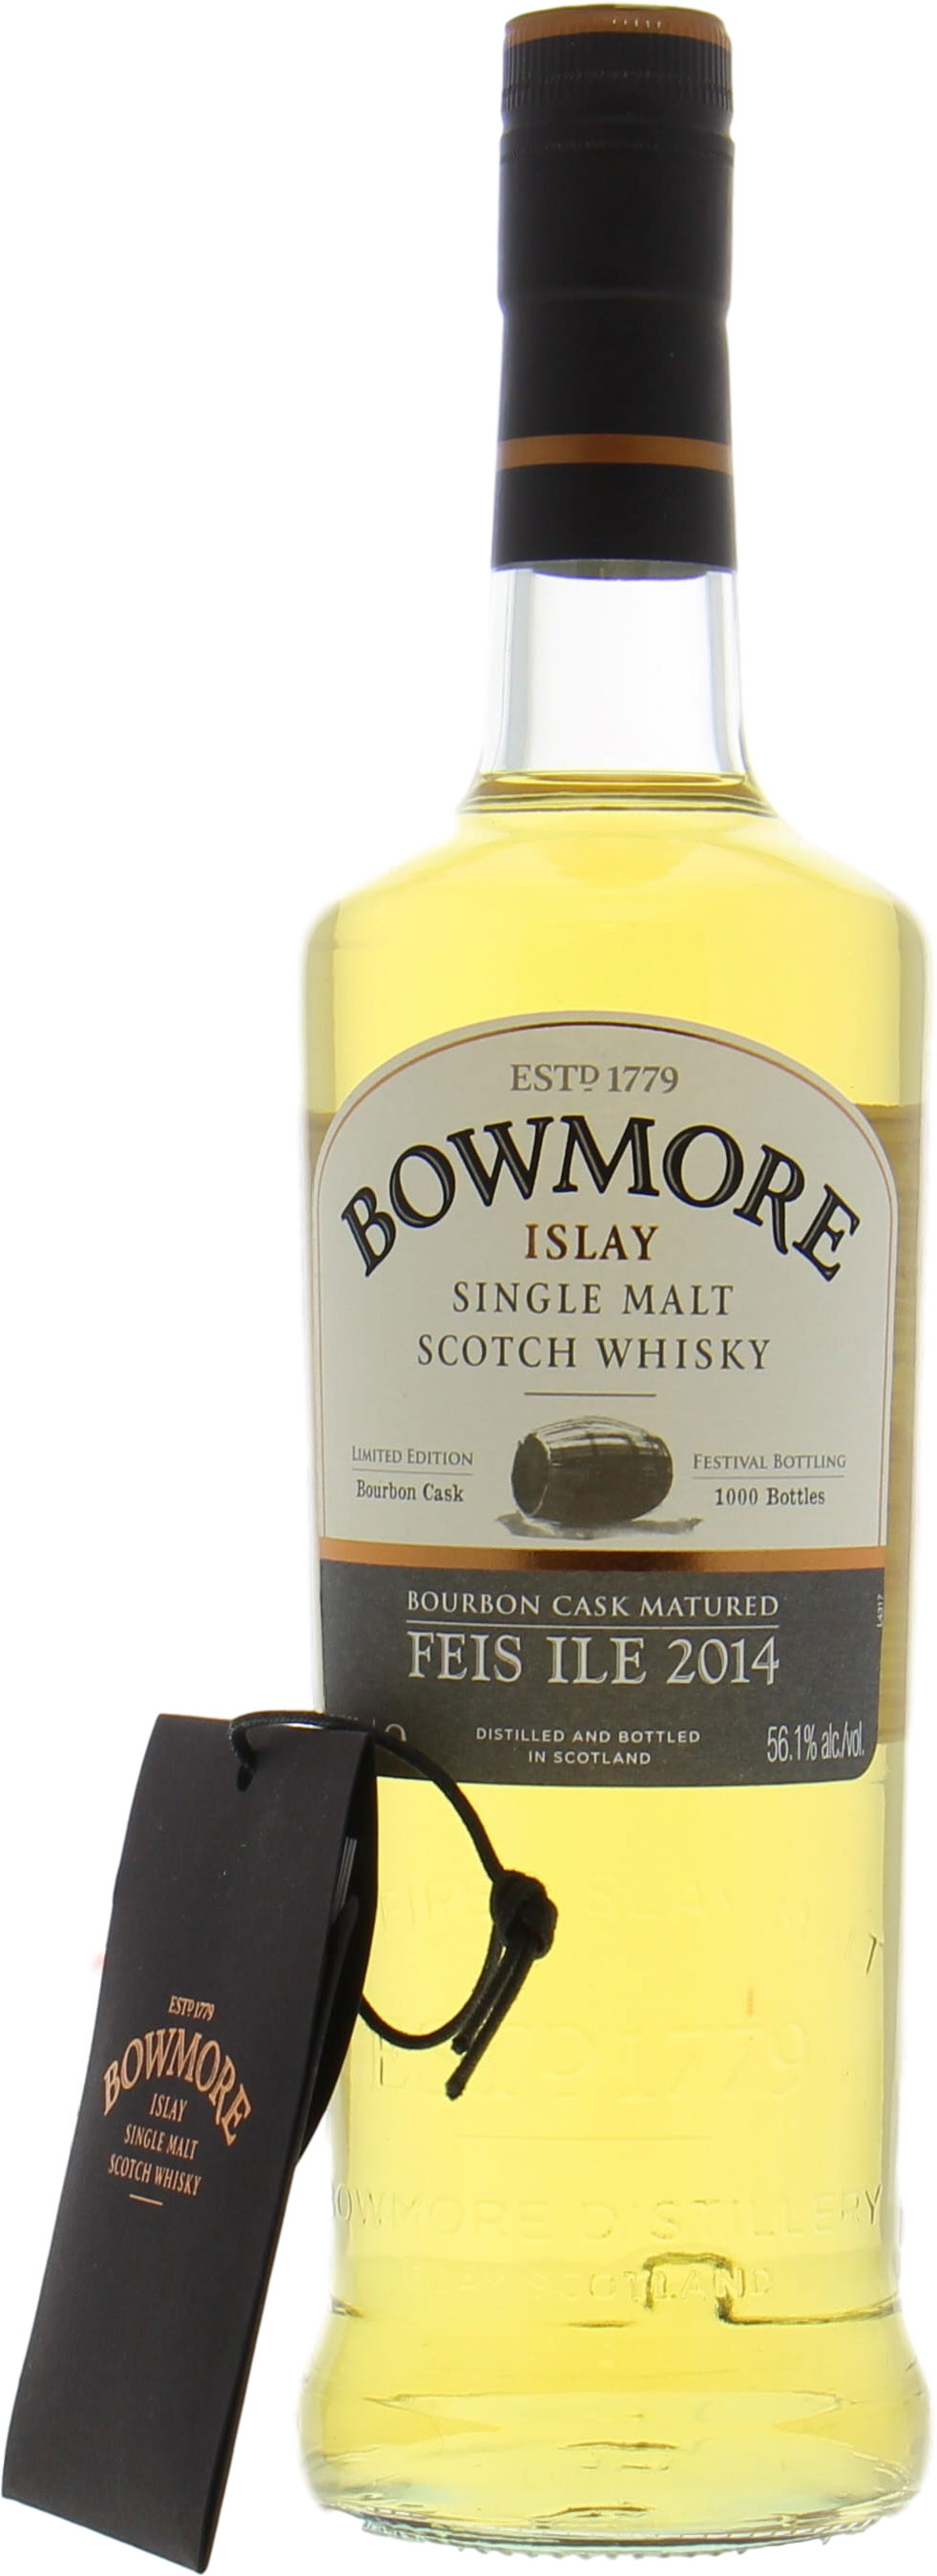 Bowmore - Feis Ile 2014 56.1% NV NO OC